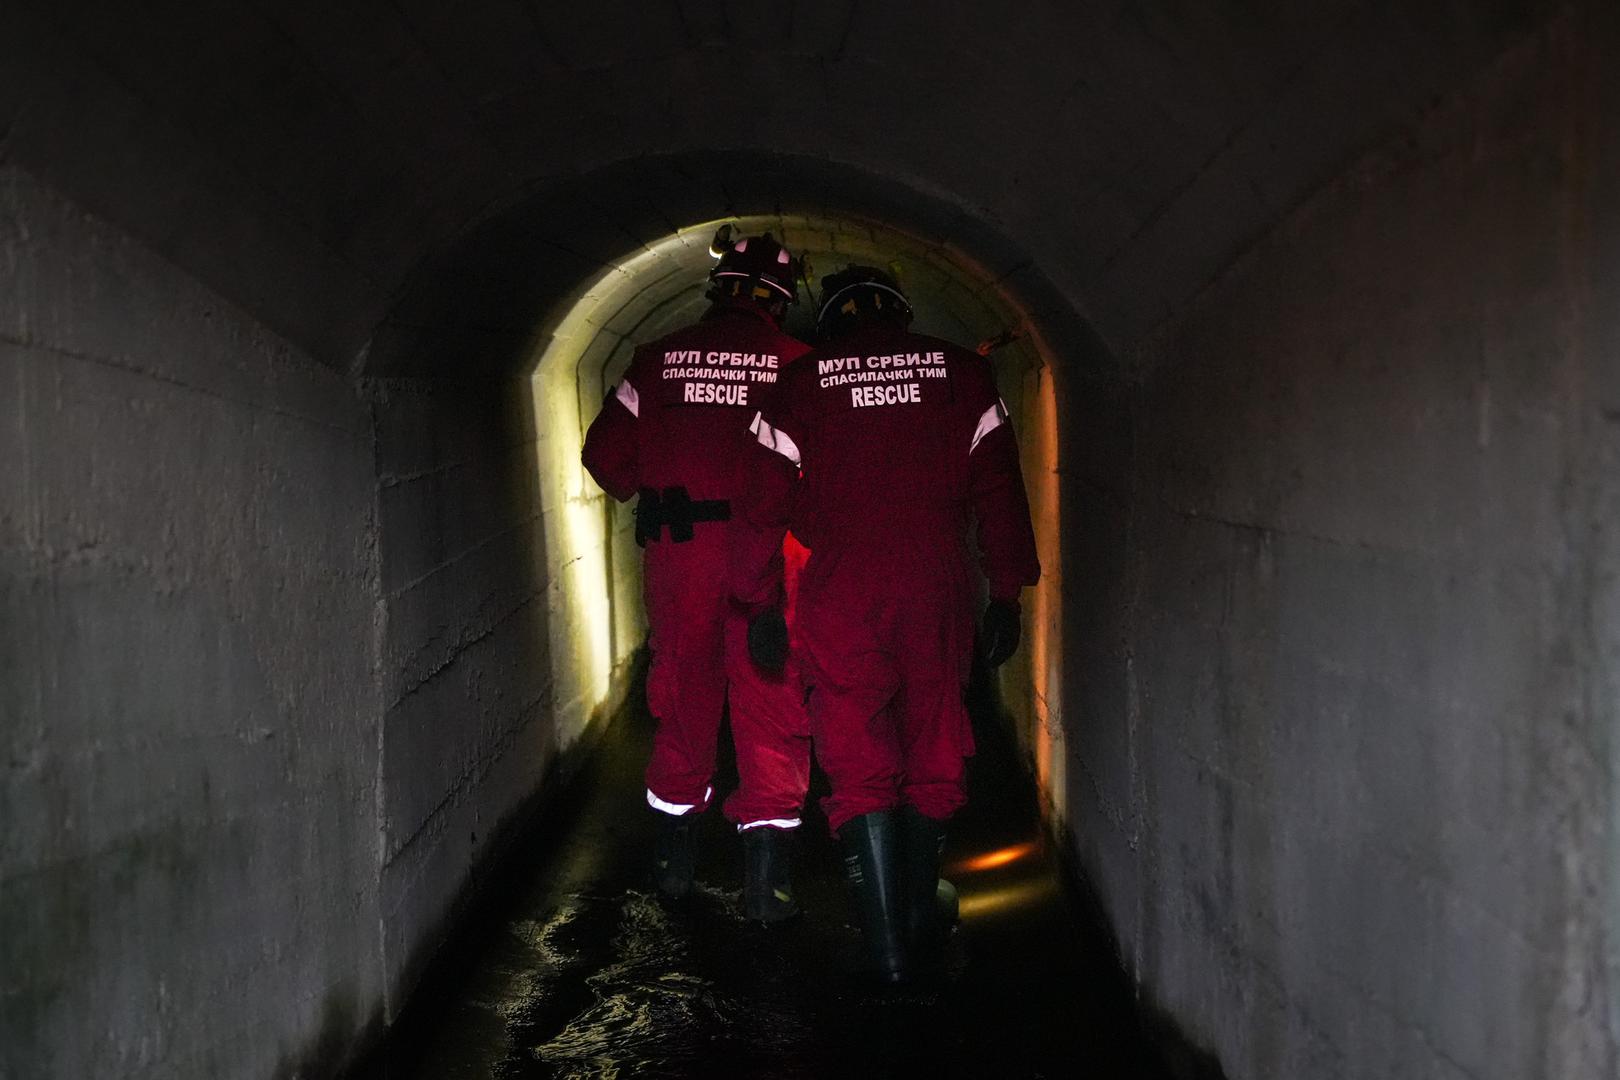 Specijalistički timovi za spašavanje iz ruševina Sektora za izvanredne situacije iz Beograda i Novog Sada, zajedno sa ostalim pripadnicima Ministarstva unutarnjih poslova, od ranih jutarnjih sati temeljito su pretražili tunel, podzemne kanale i okna ukupne dužine oko 4,5 kilometara, naveo je MUP Republike Srbije. 

